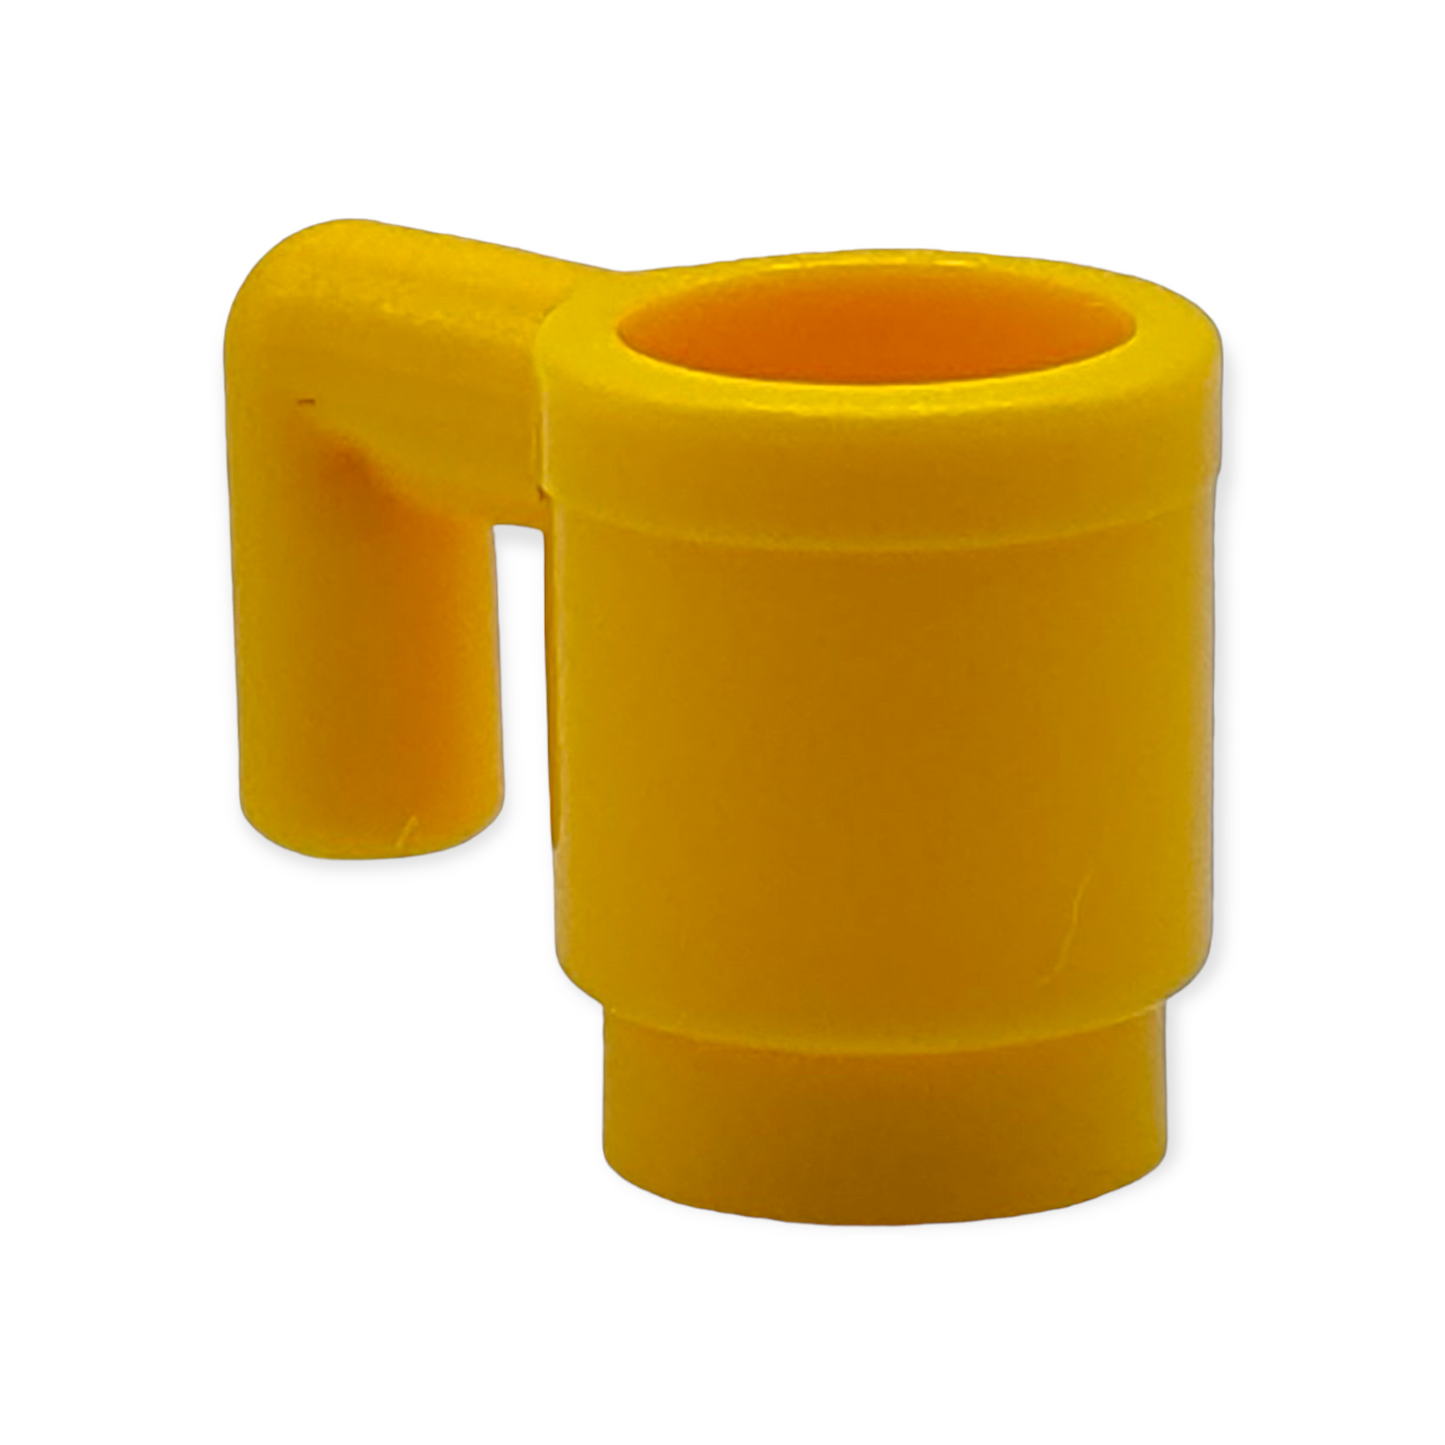 LEGO - Cup / Tasse in verschiedenen Farben